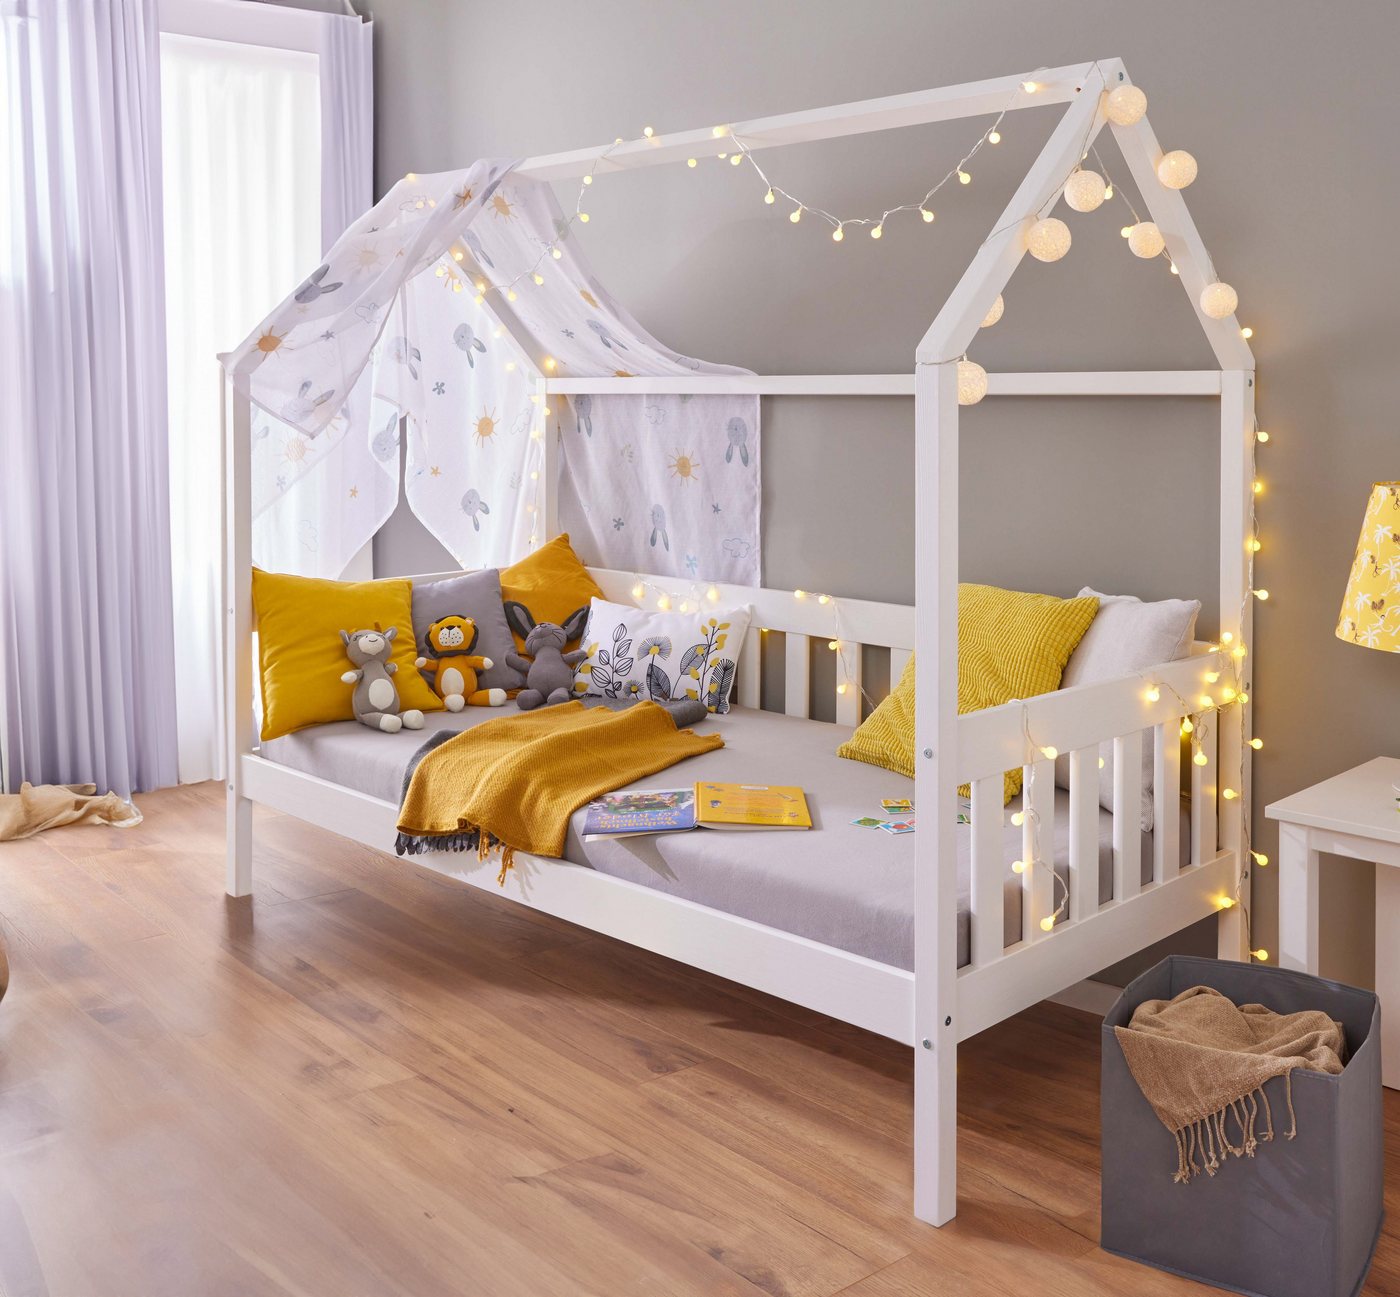 Inter Link Kinderbett Funky Hausbett (Lieferung ohne Matratze), aus Massivholz, in weiß lackiert, modernes Hausbett, ideal zum dekorieren von Inter Link